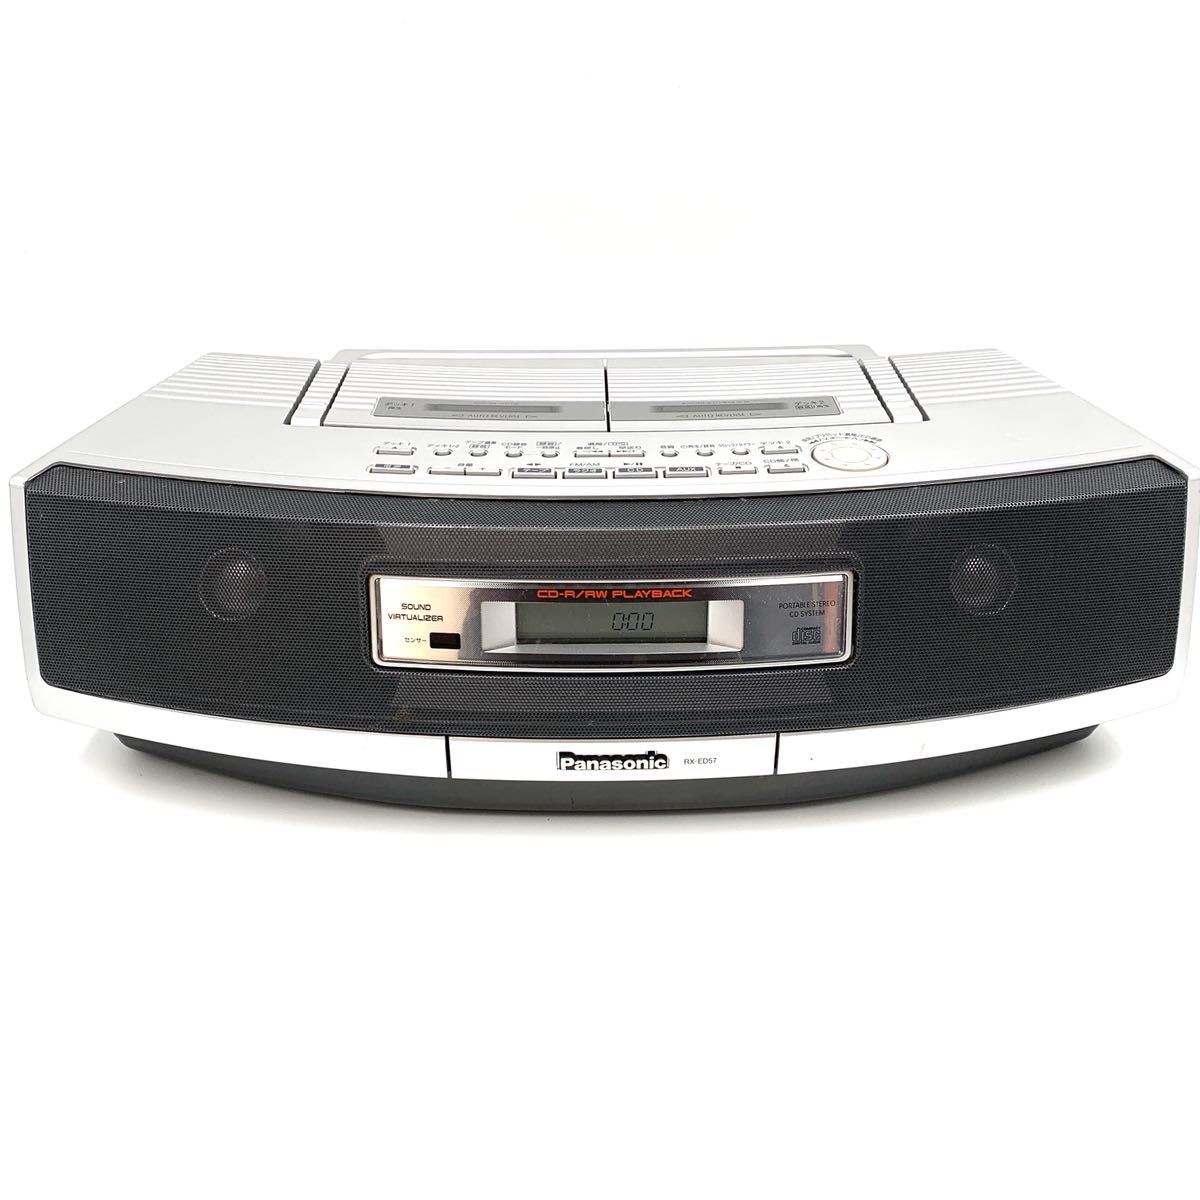 Panasonic パナソニック ダブルラジカセ RX-ED57 CDラジオ 通電確認 カセットCD JAPAN ポータブルステレオCDシステム  少し豊富な贈り物